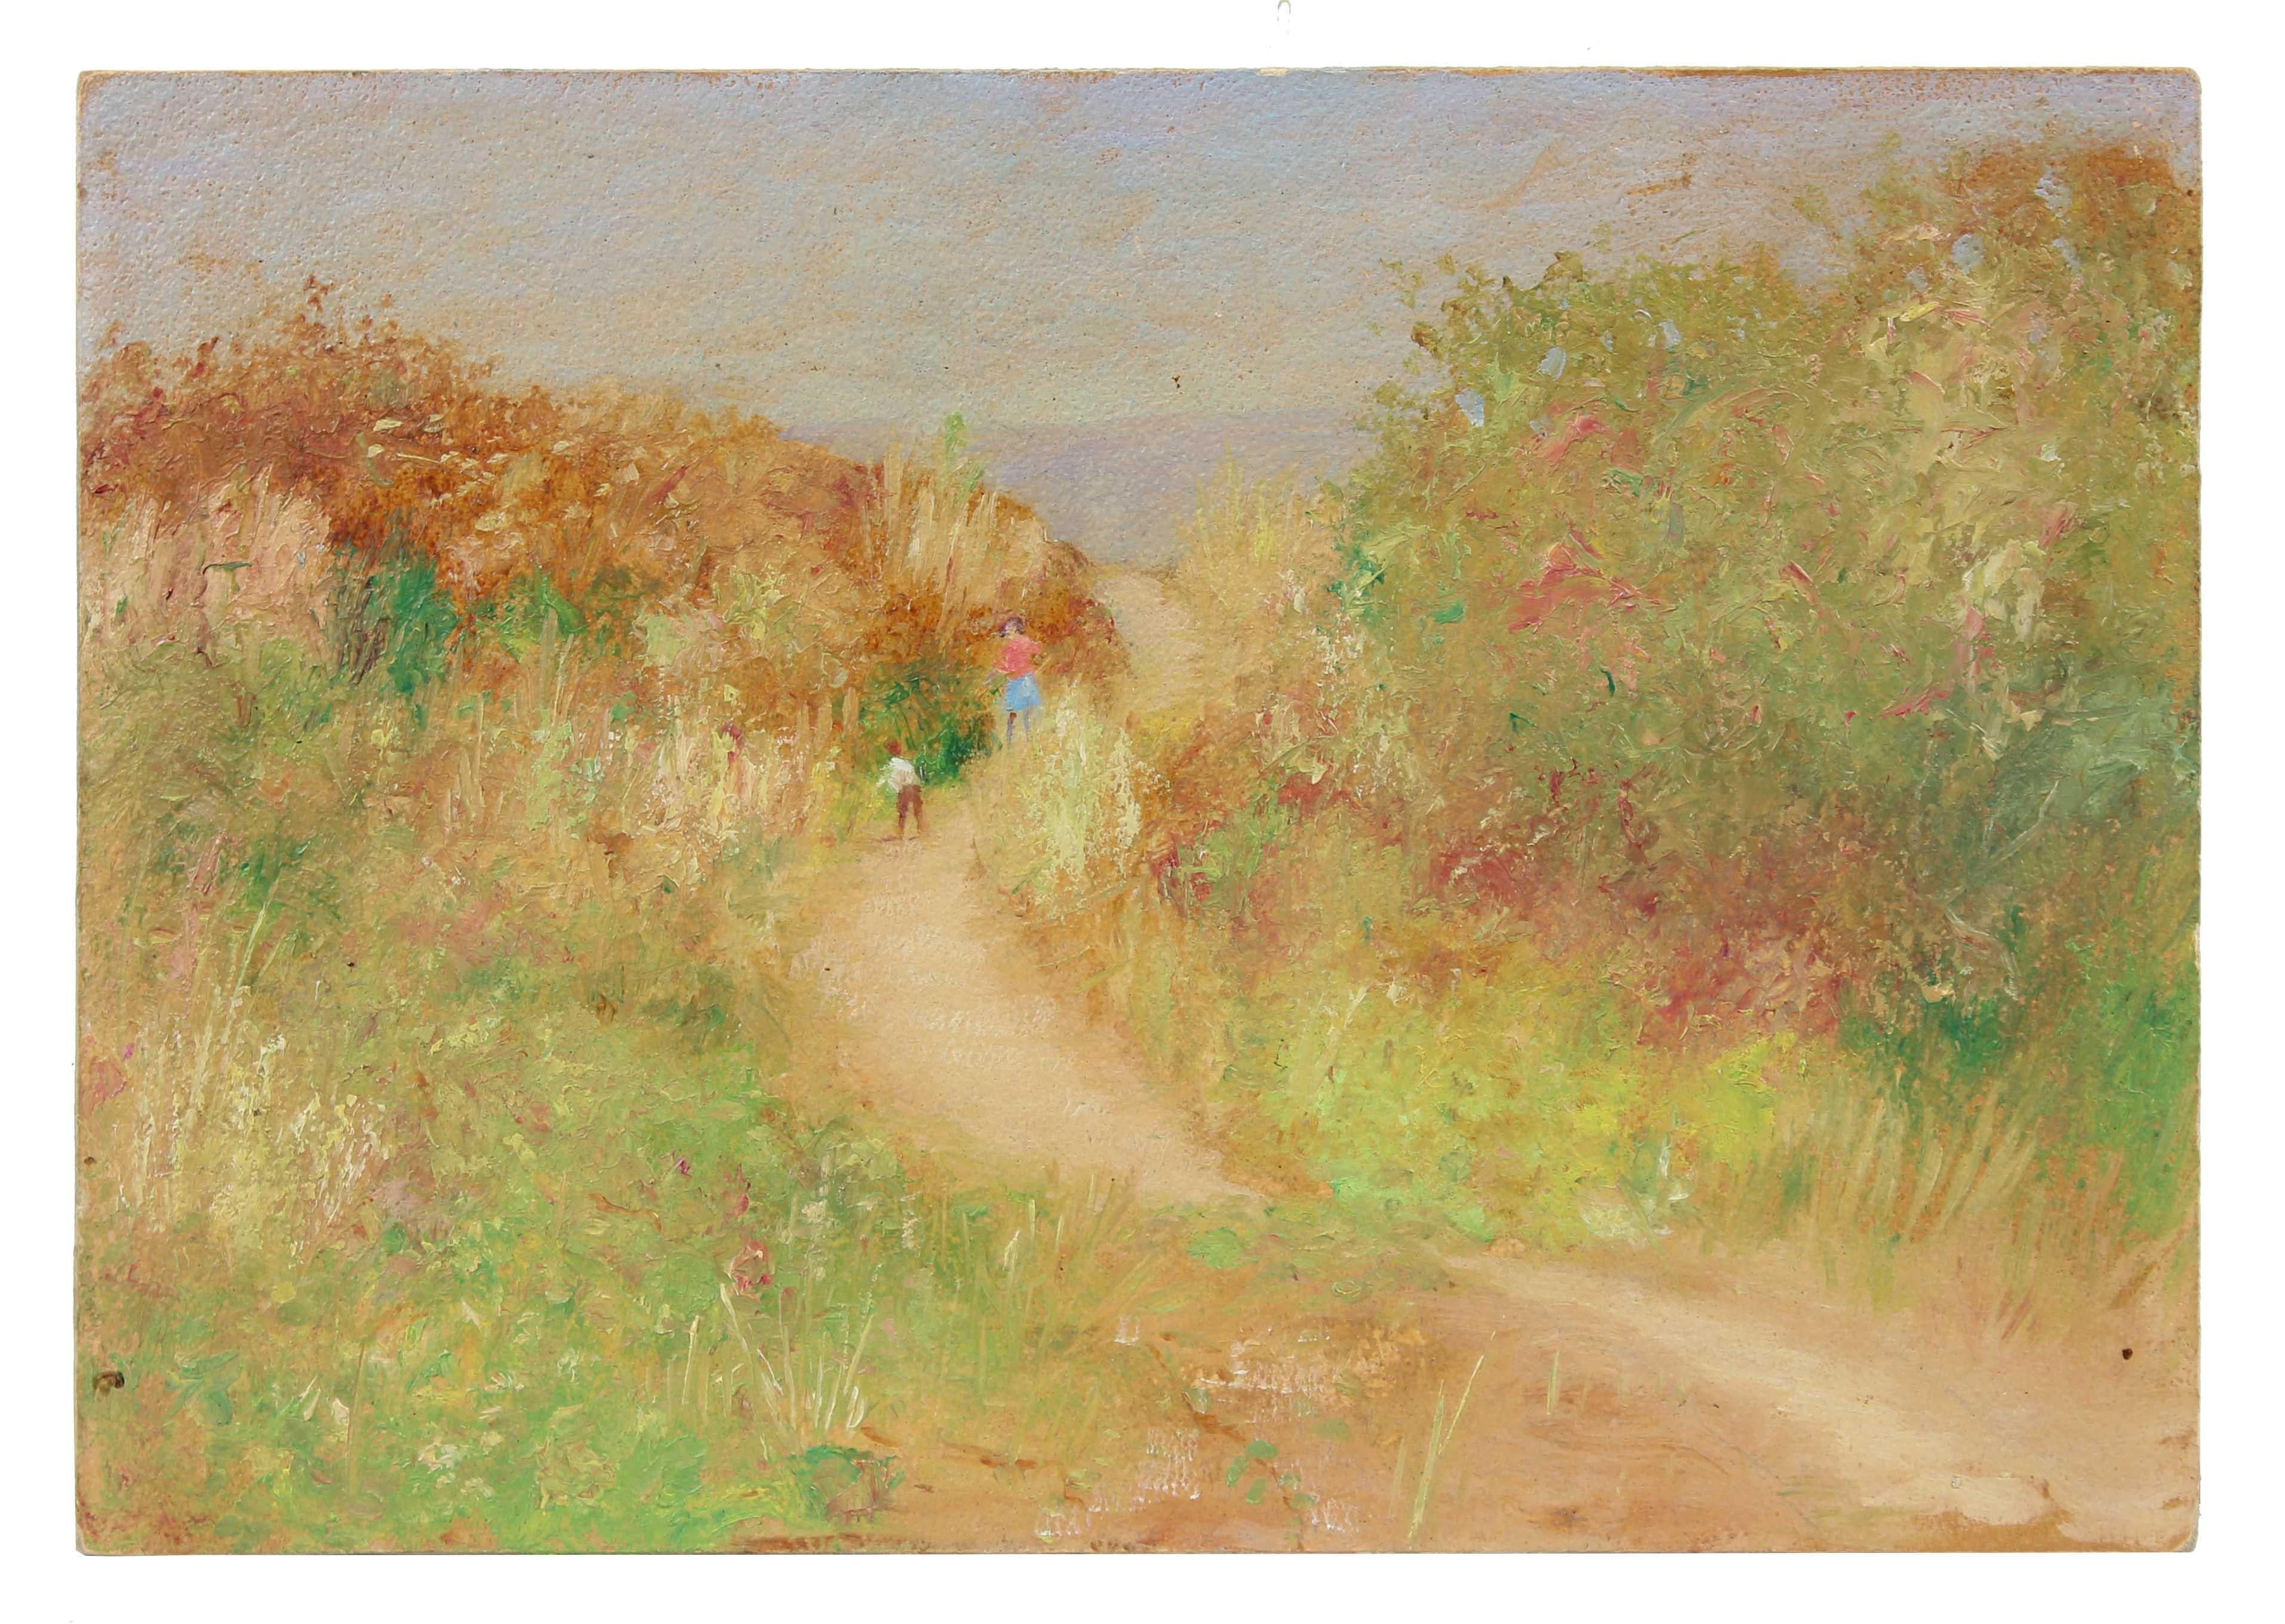 Duncan Davidson Landscape Painting - West Coast Impressionist Landscape, Oil Painting, Circa 1900-1930s